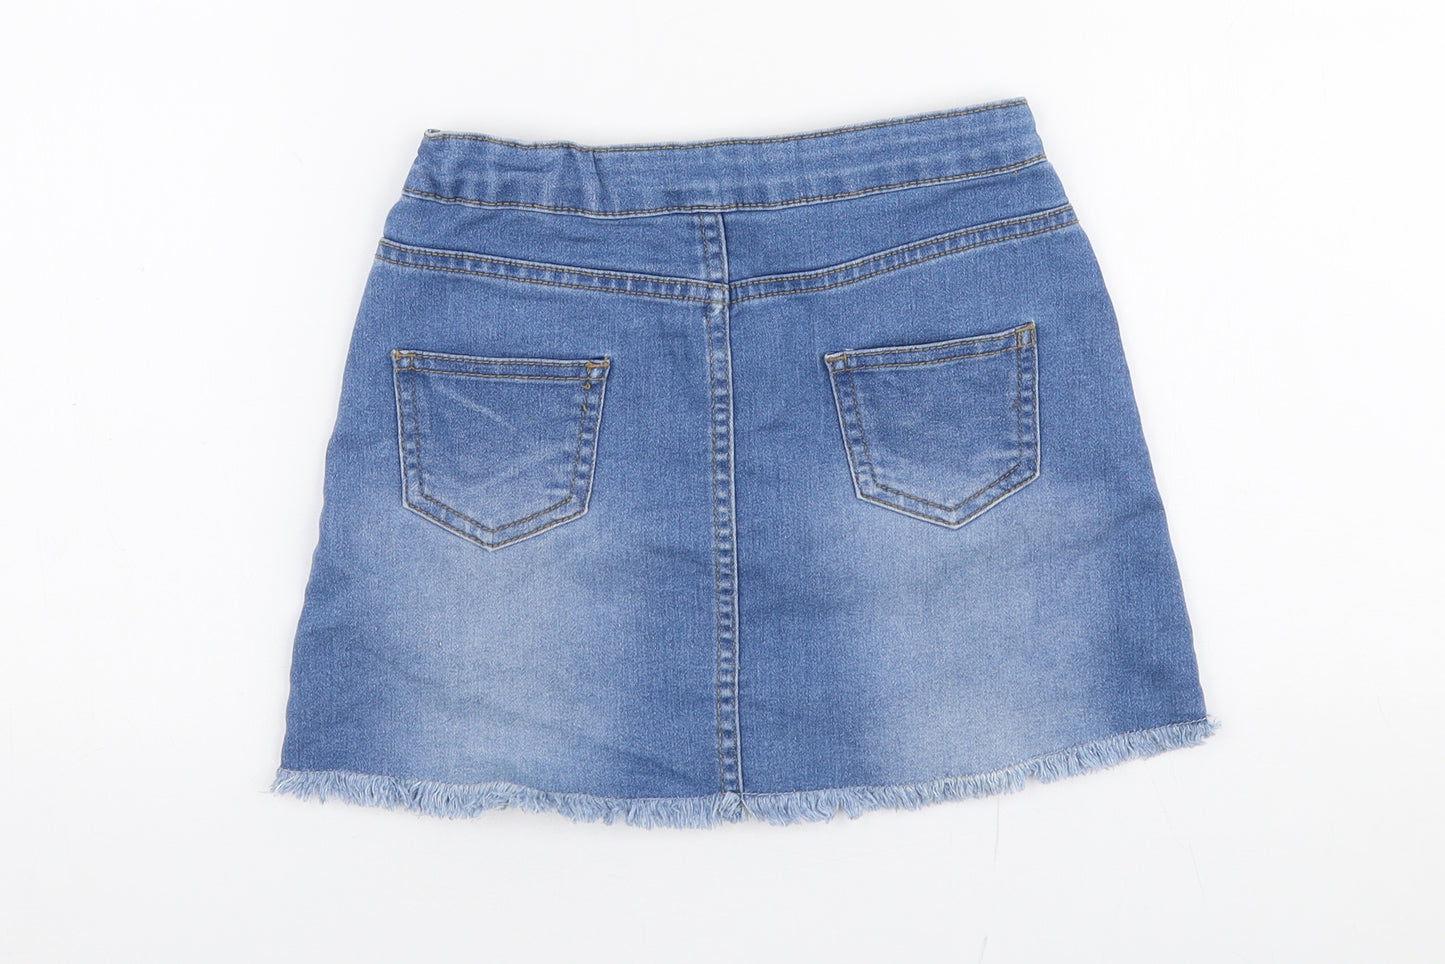 Denim Co Girls Blue  Cotton A-Line Skirt Size 6-7 Years  Regular Button